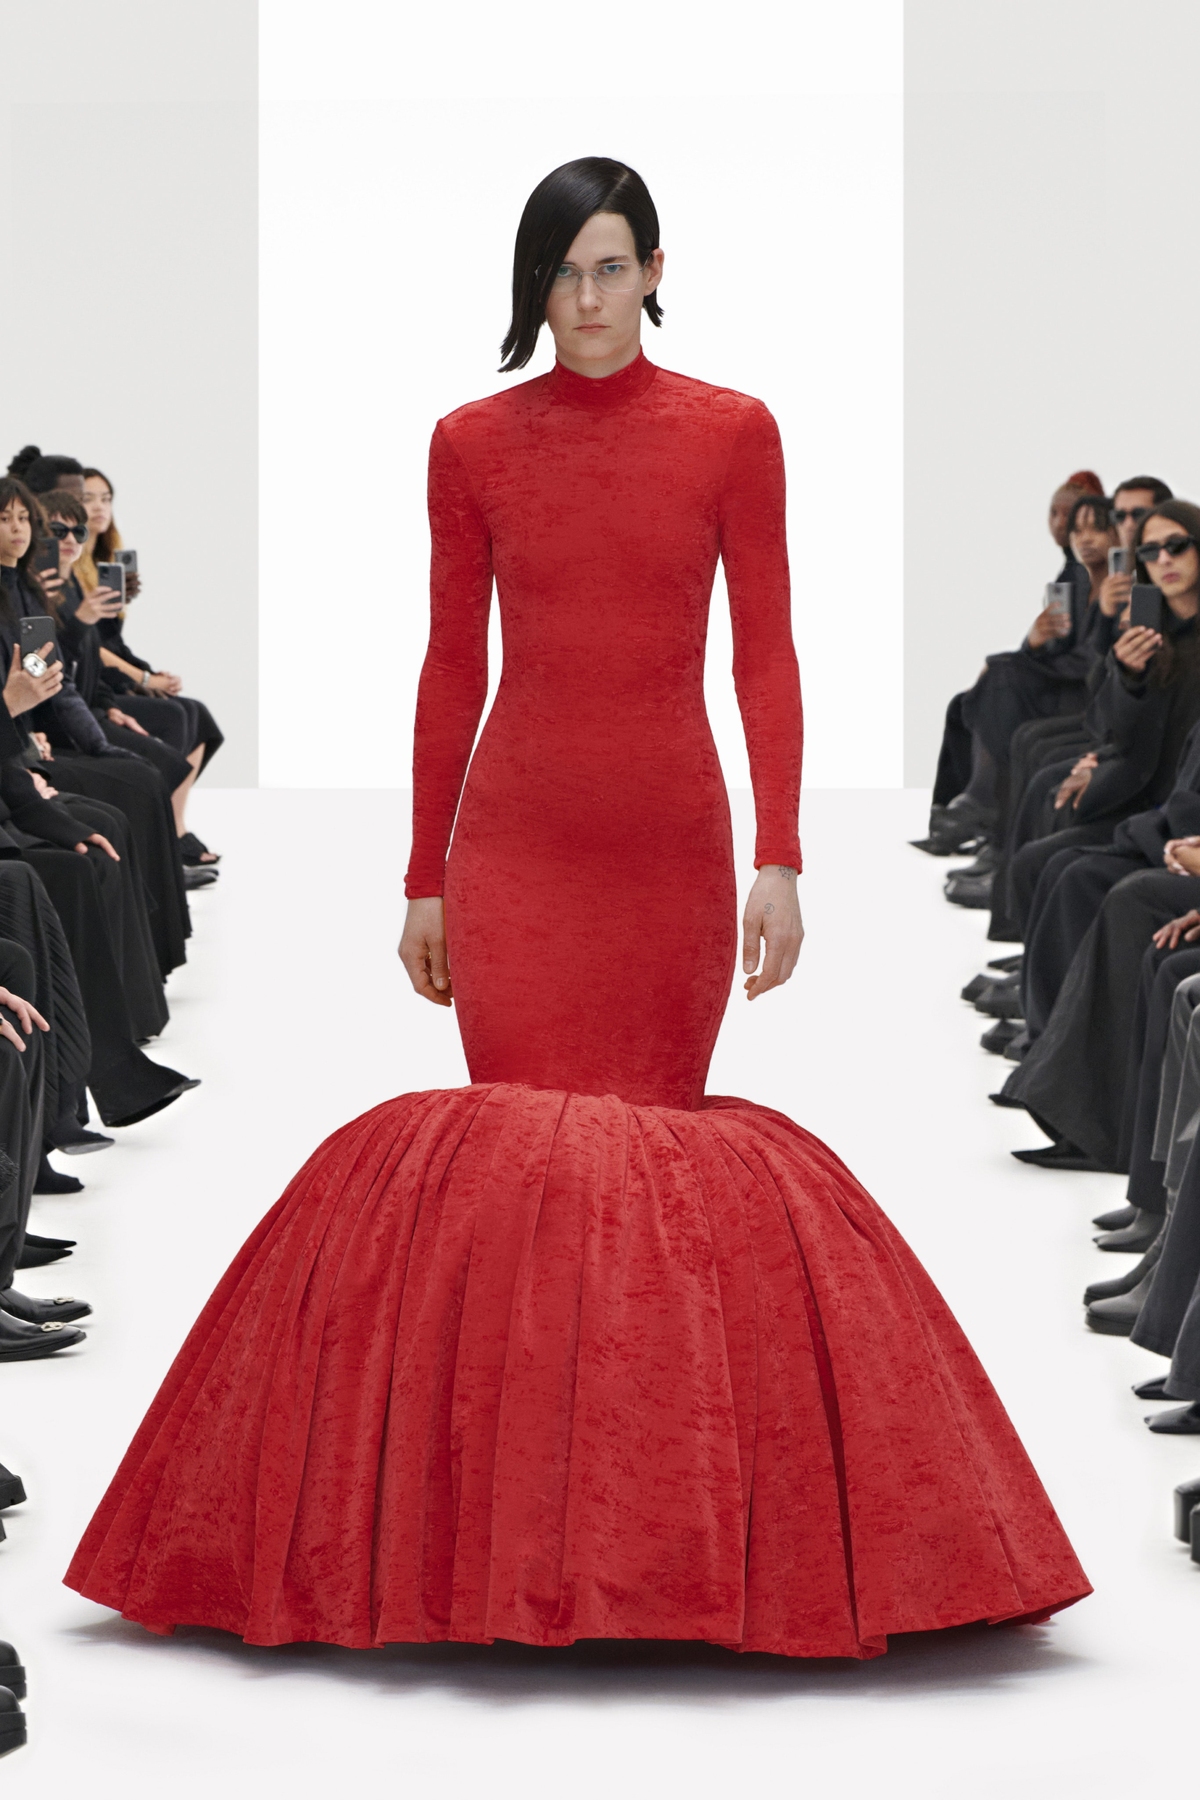 Balenciaga tổ chức show thời trang với người mẫu và khán giả ảo  - Ảnh 11